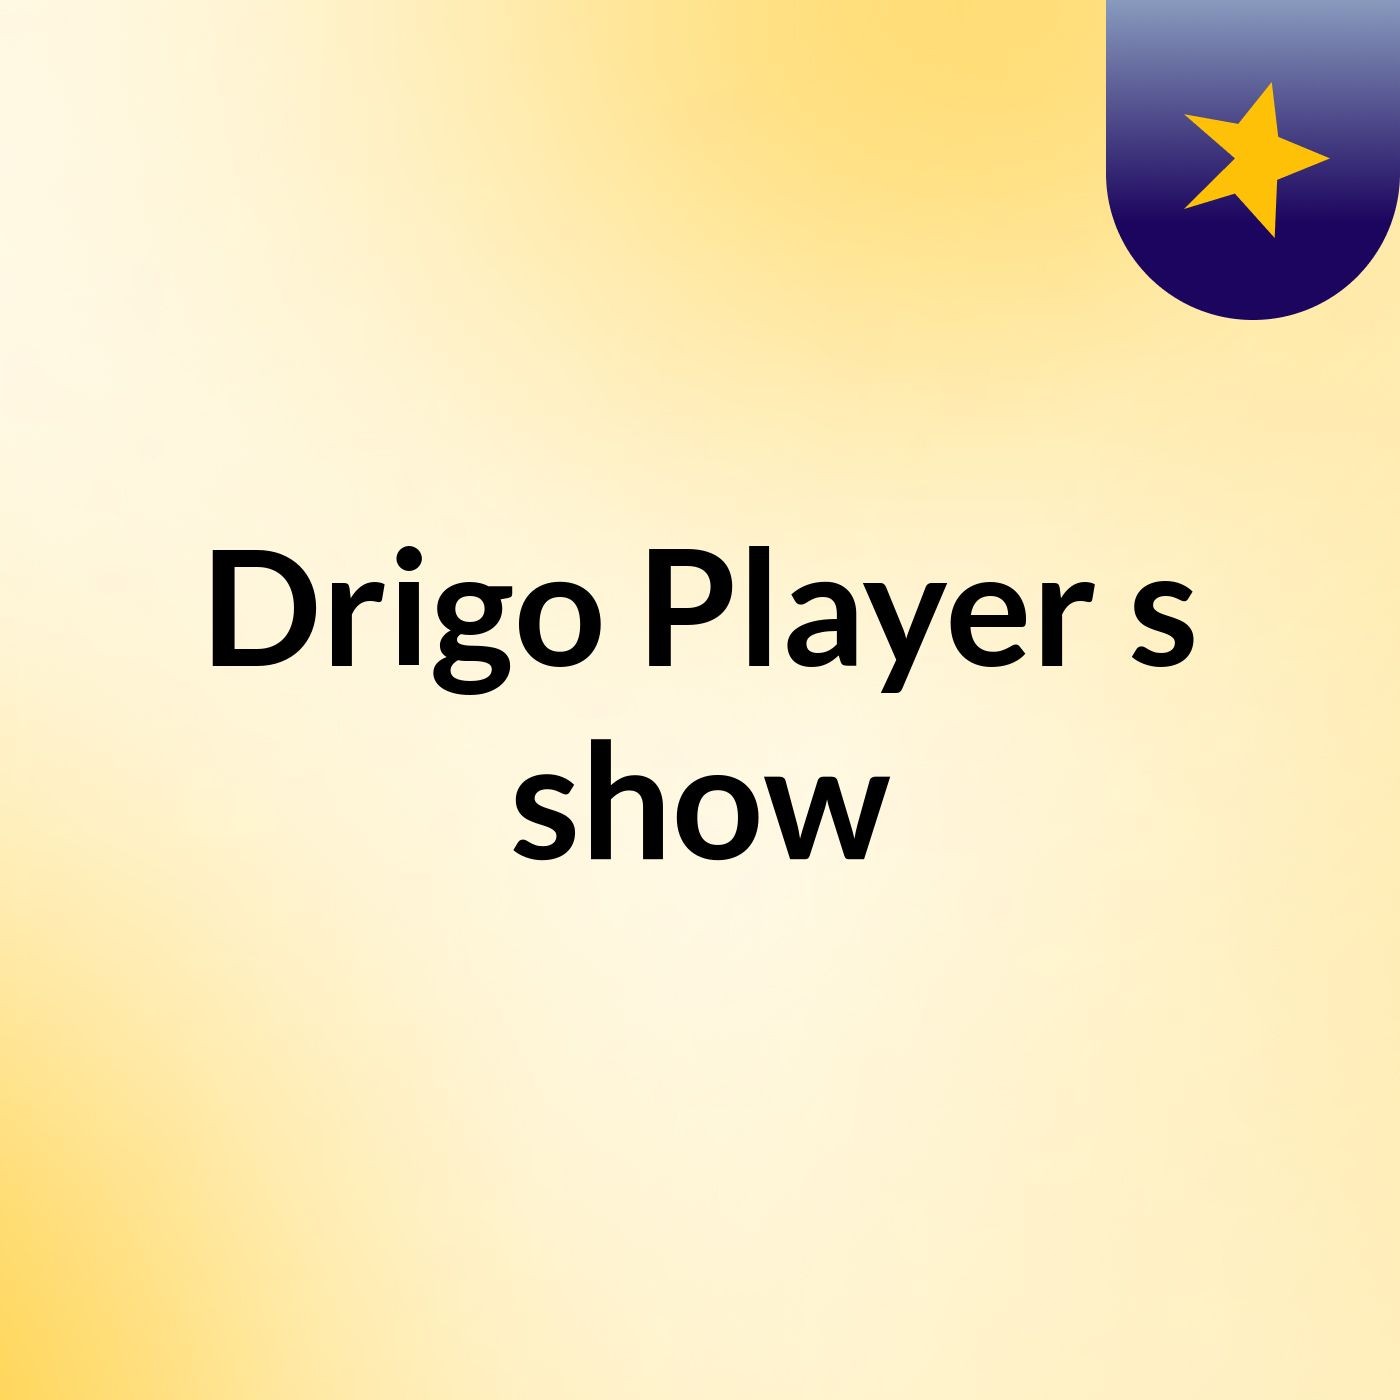 Drigo Player's show